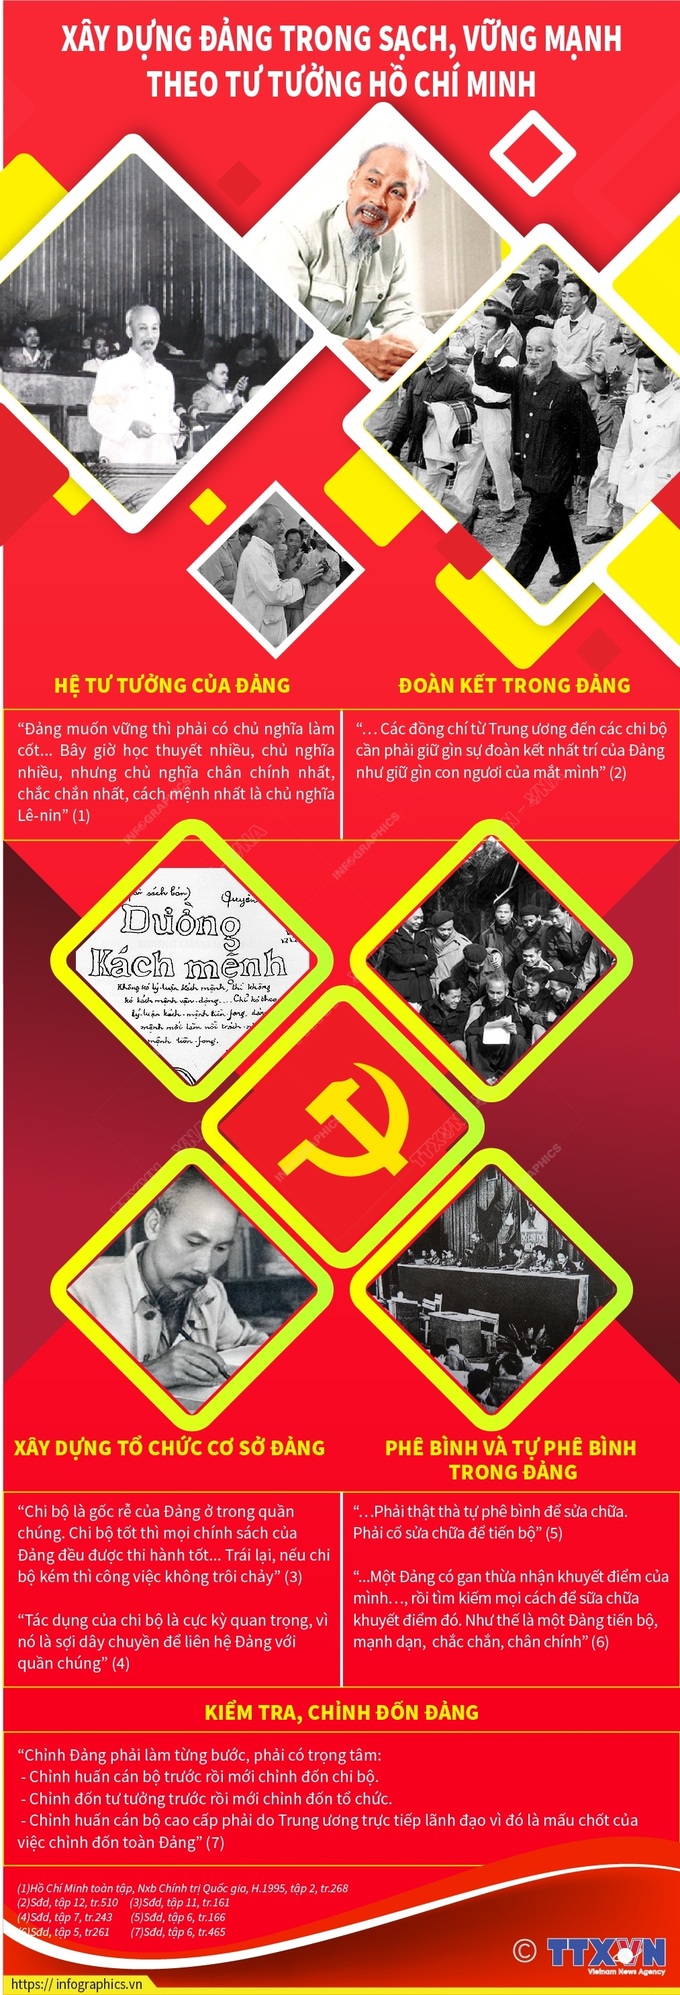 Xây dựng Đảng trong sạch, vững mạnh theo tư tưởng Hồ Chí Minh - 1